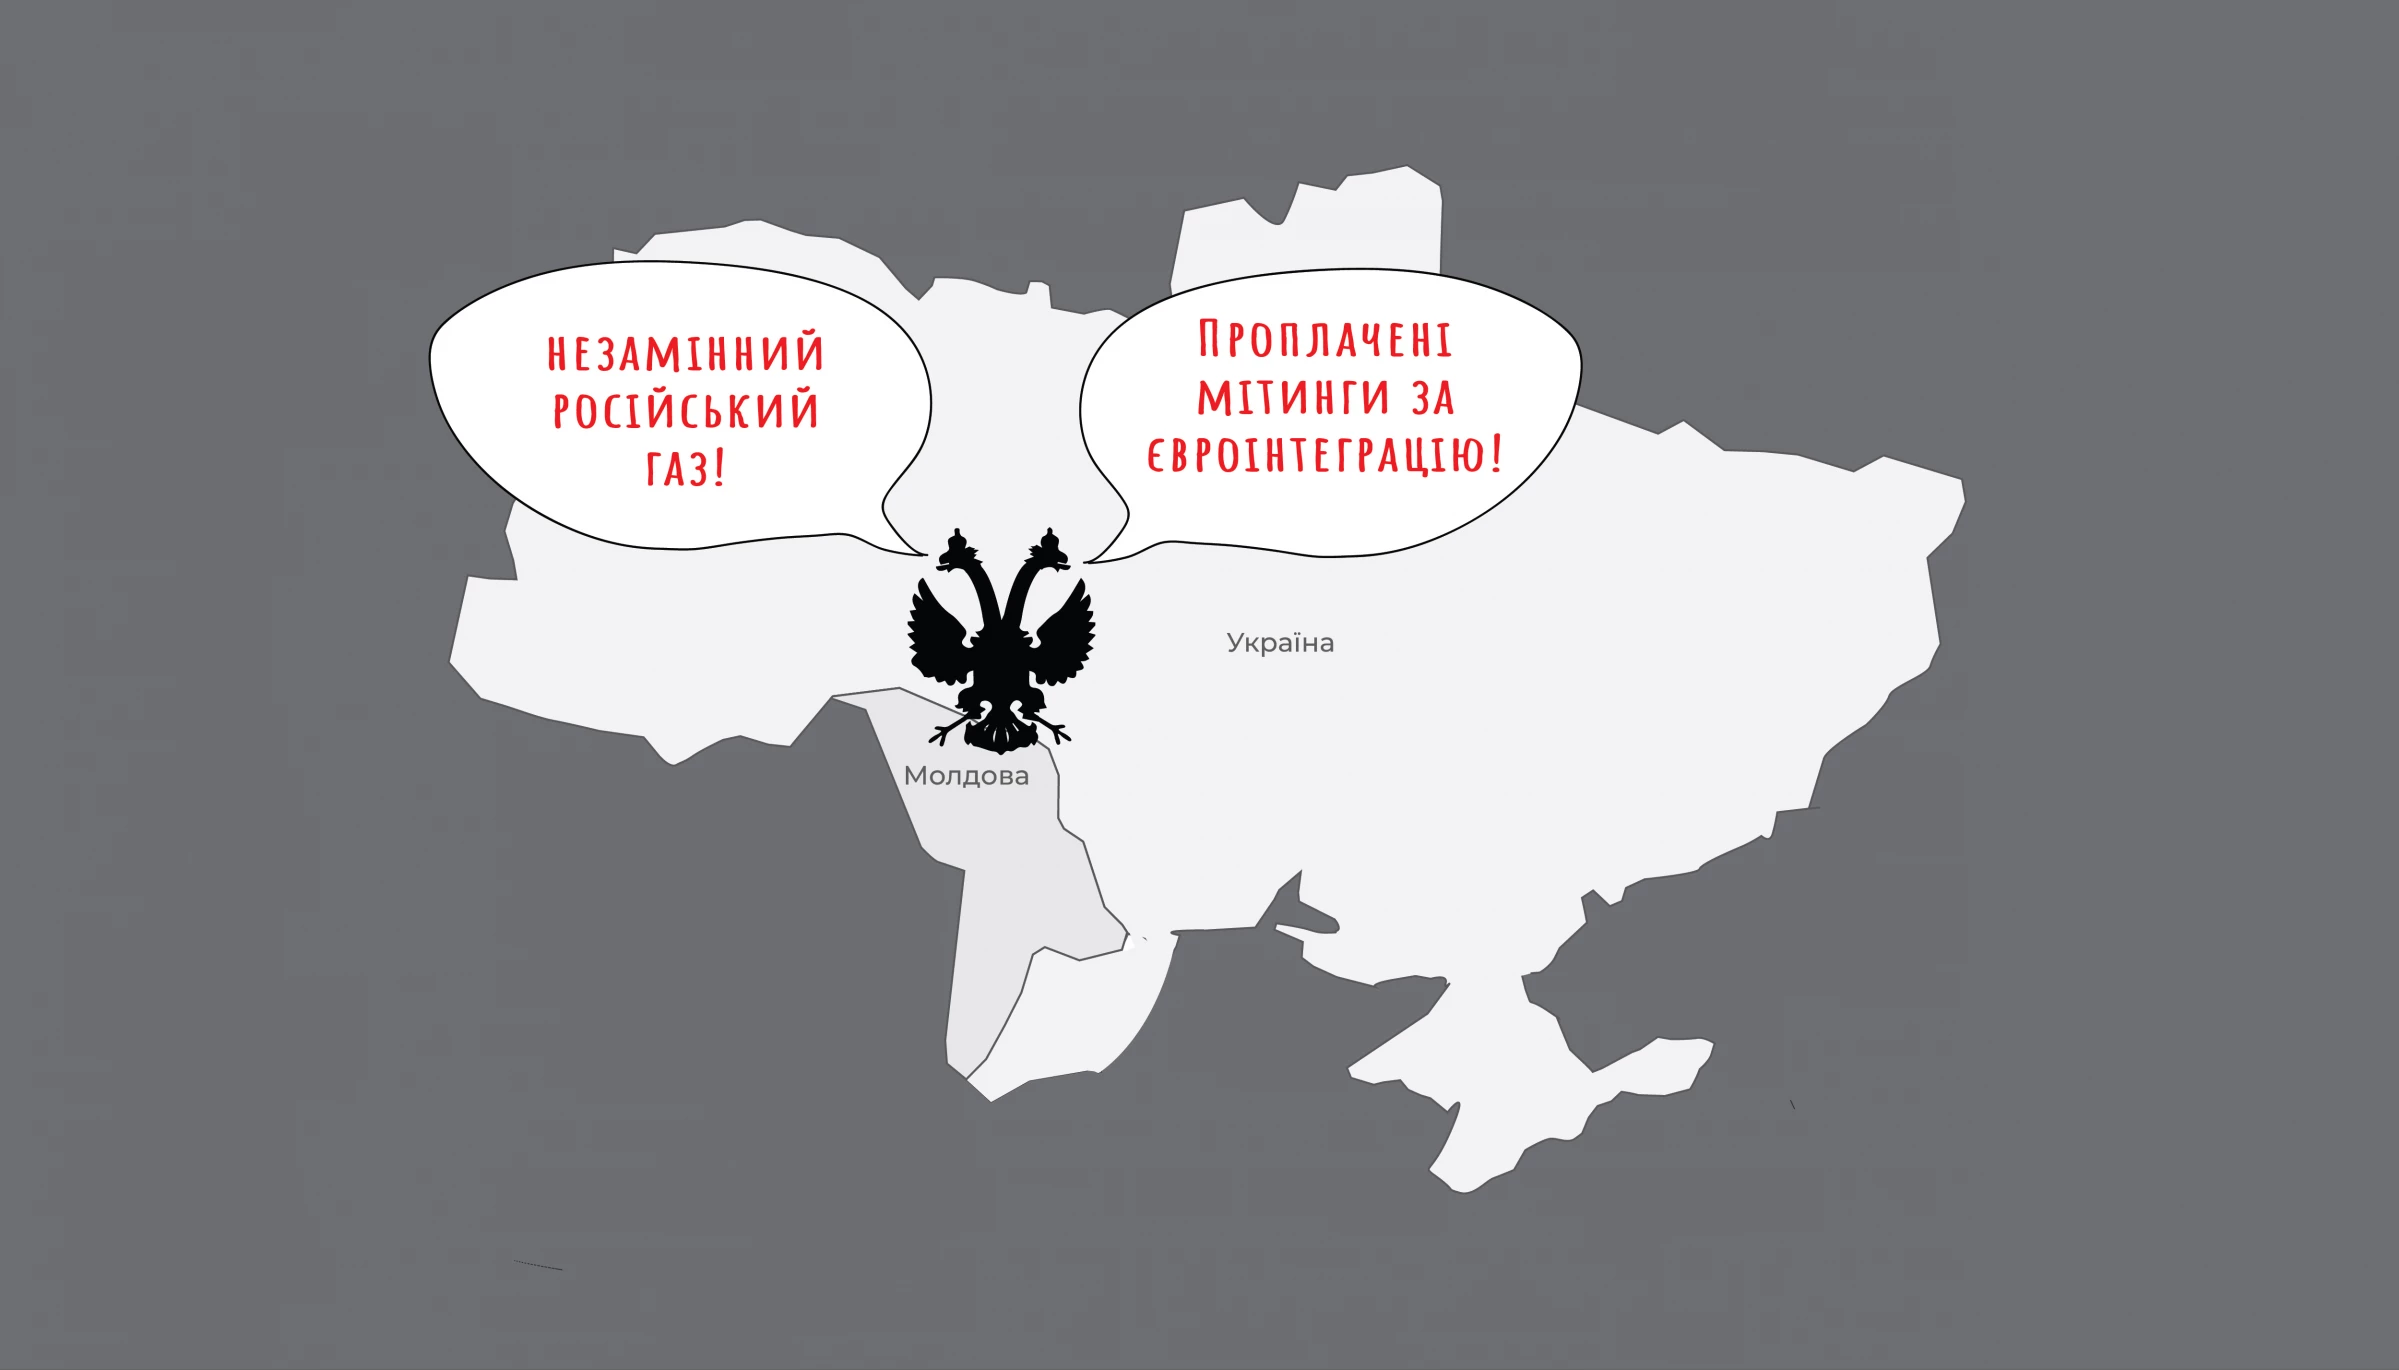 Одна методичка, дві країни: що спільного в наративах, які російський агітпроп поширює в Молдові та Україні